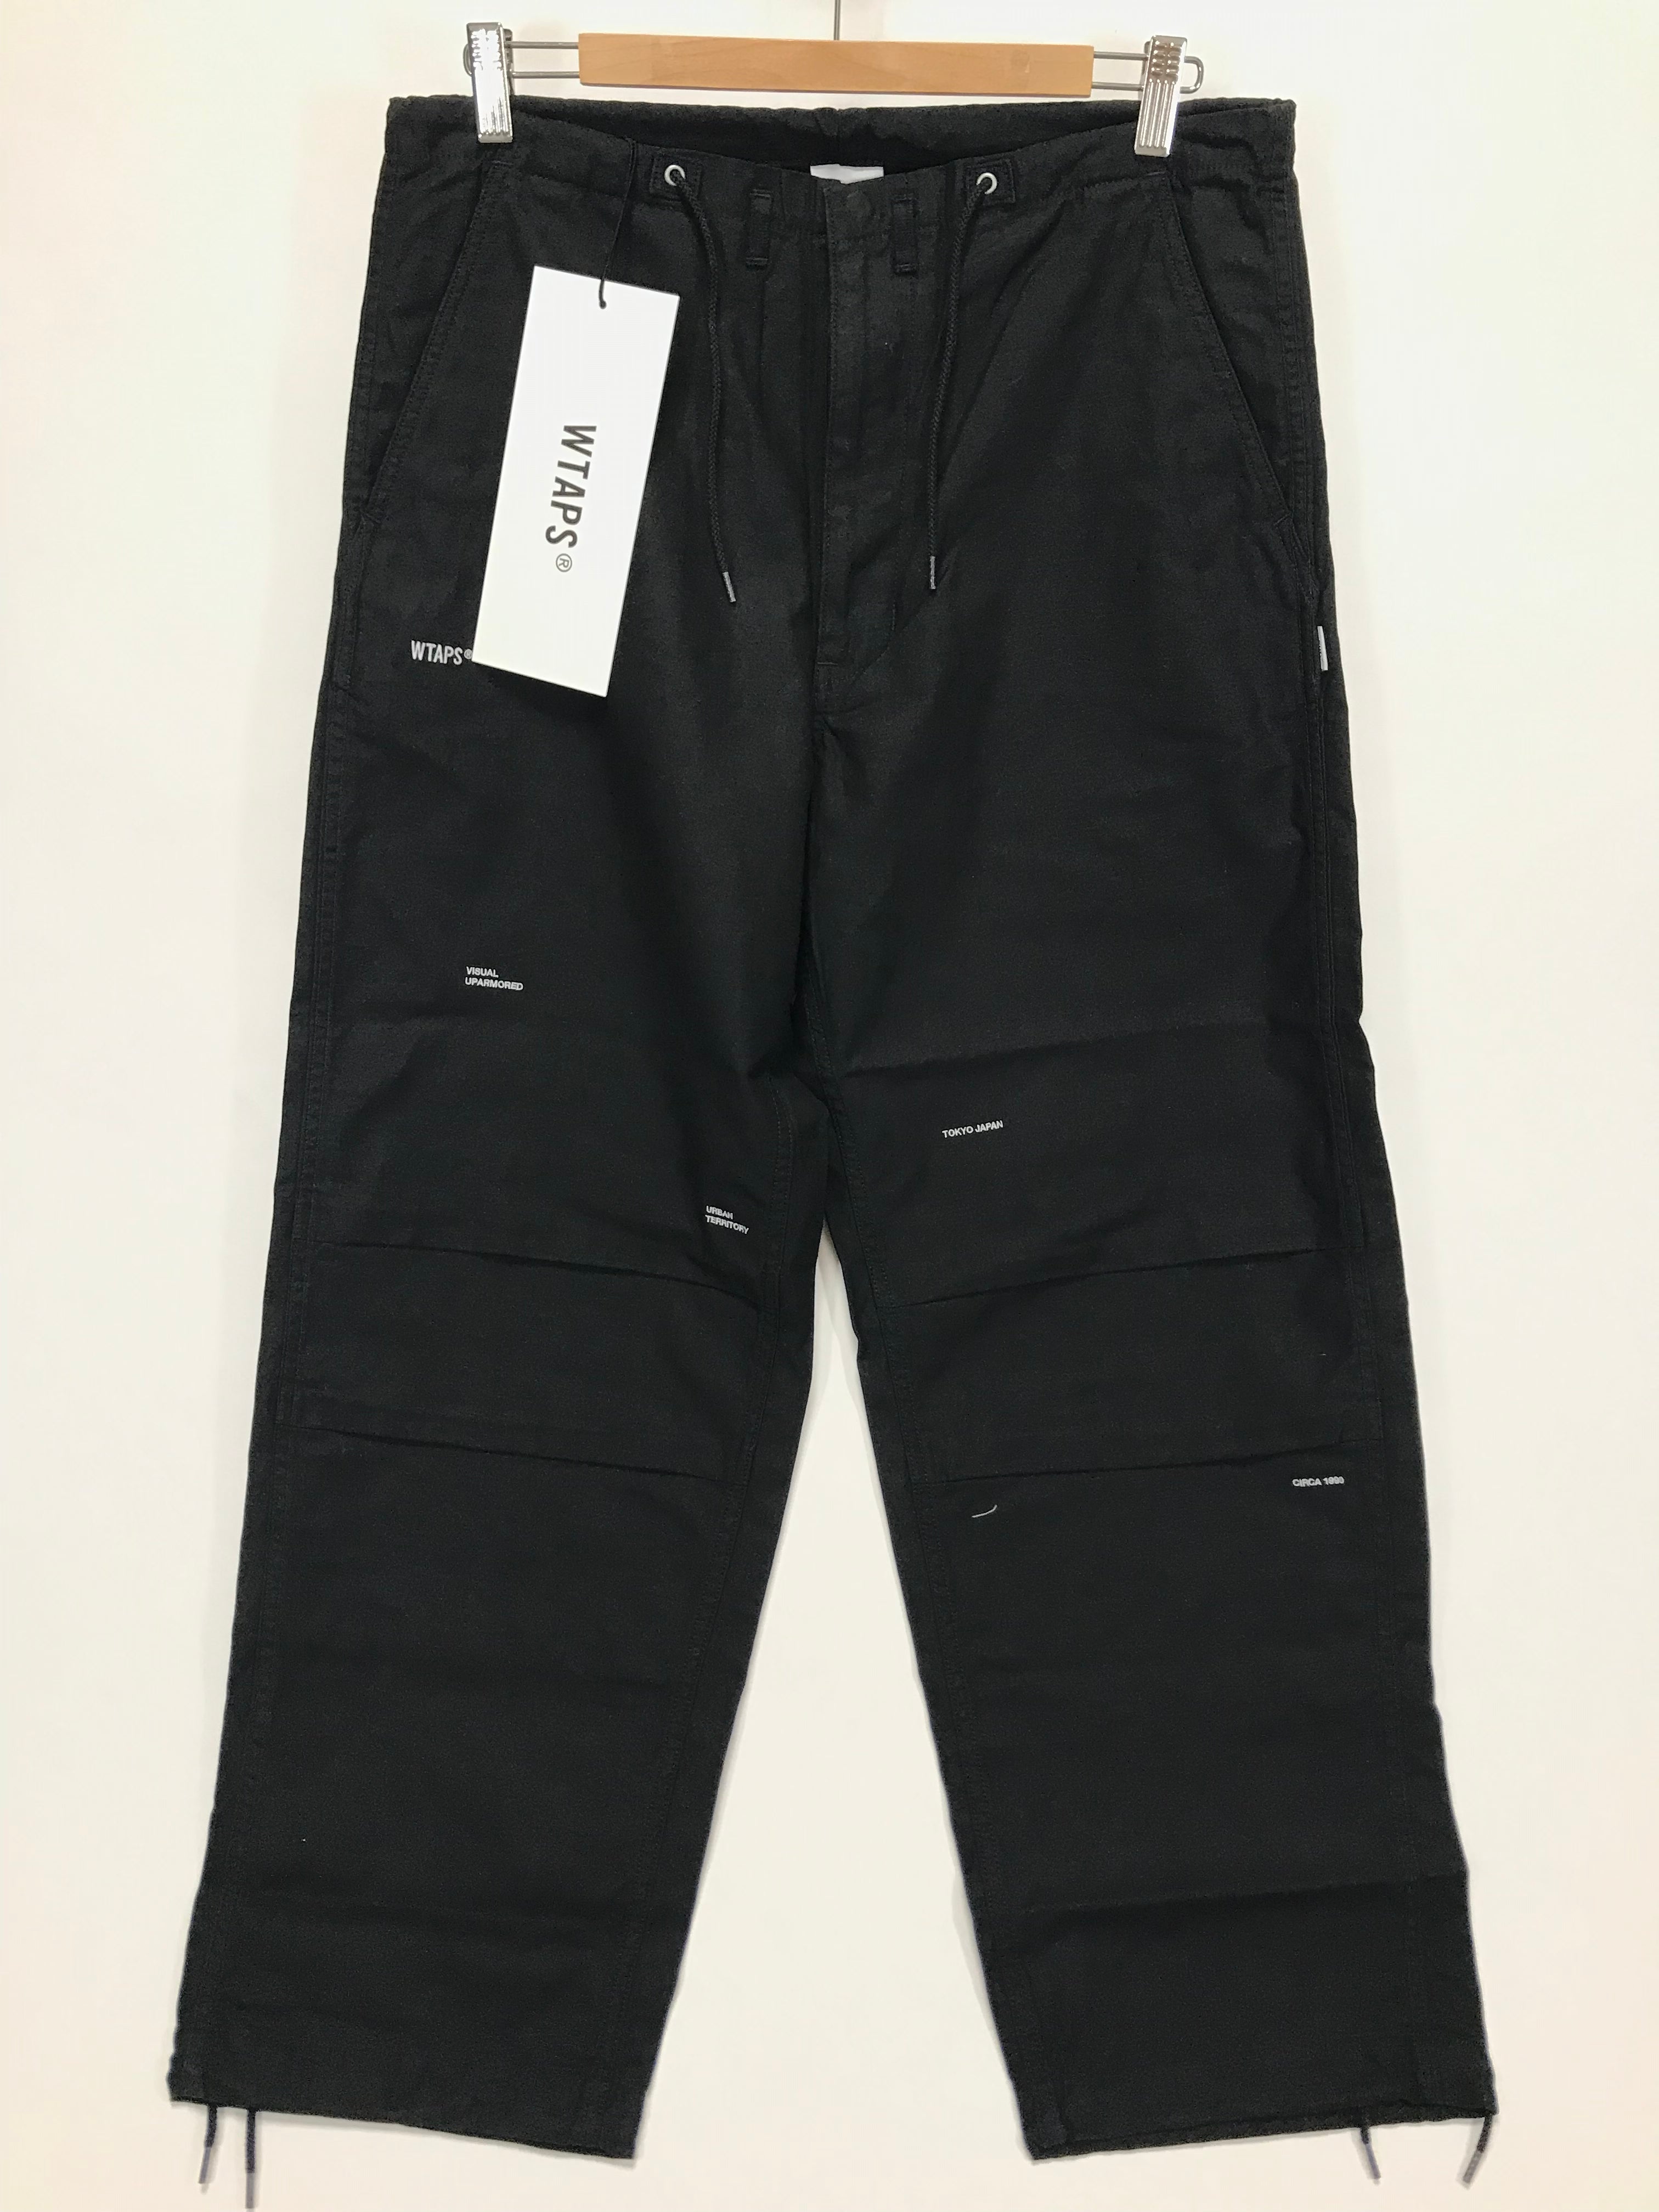 Wtaps pants black size 03 - ファッション